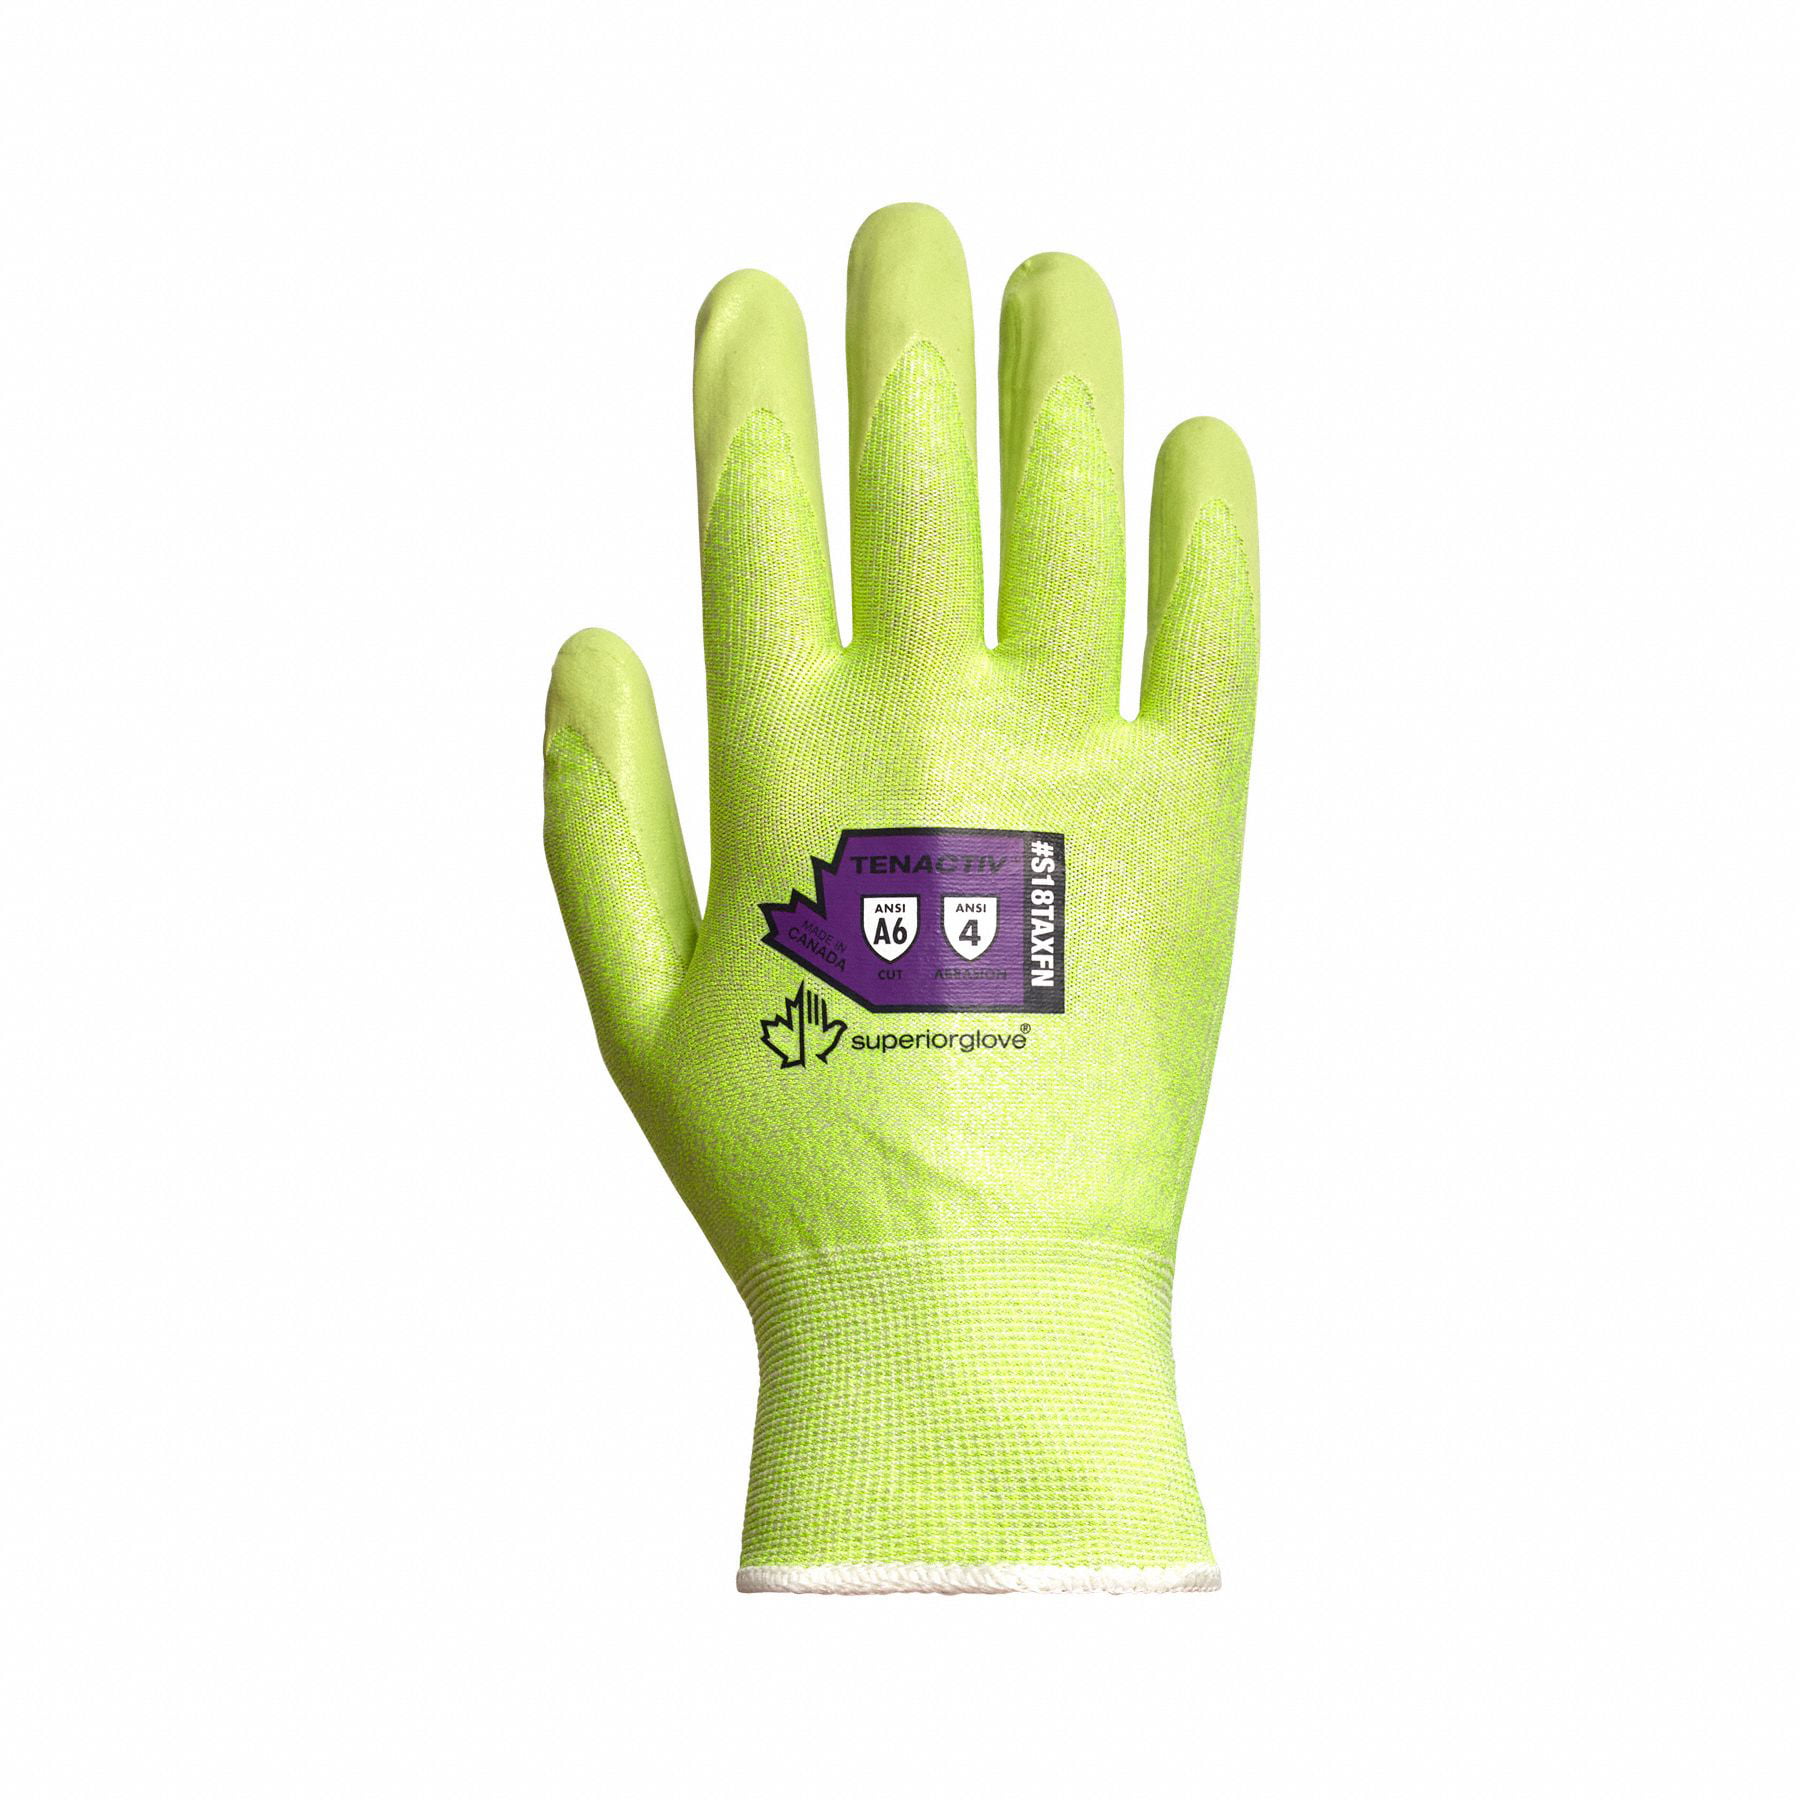 Traffiglove Cut Resistant Level 3 Heavy Duty Safety Work Grip Gardening Gloves 